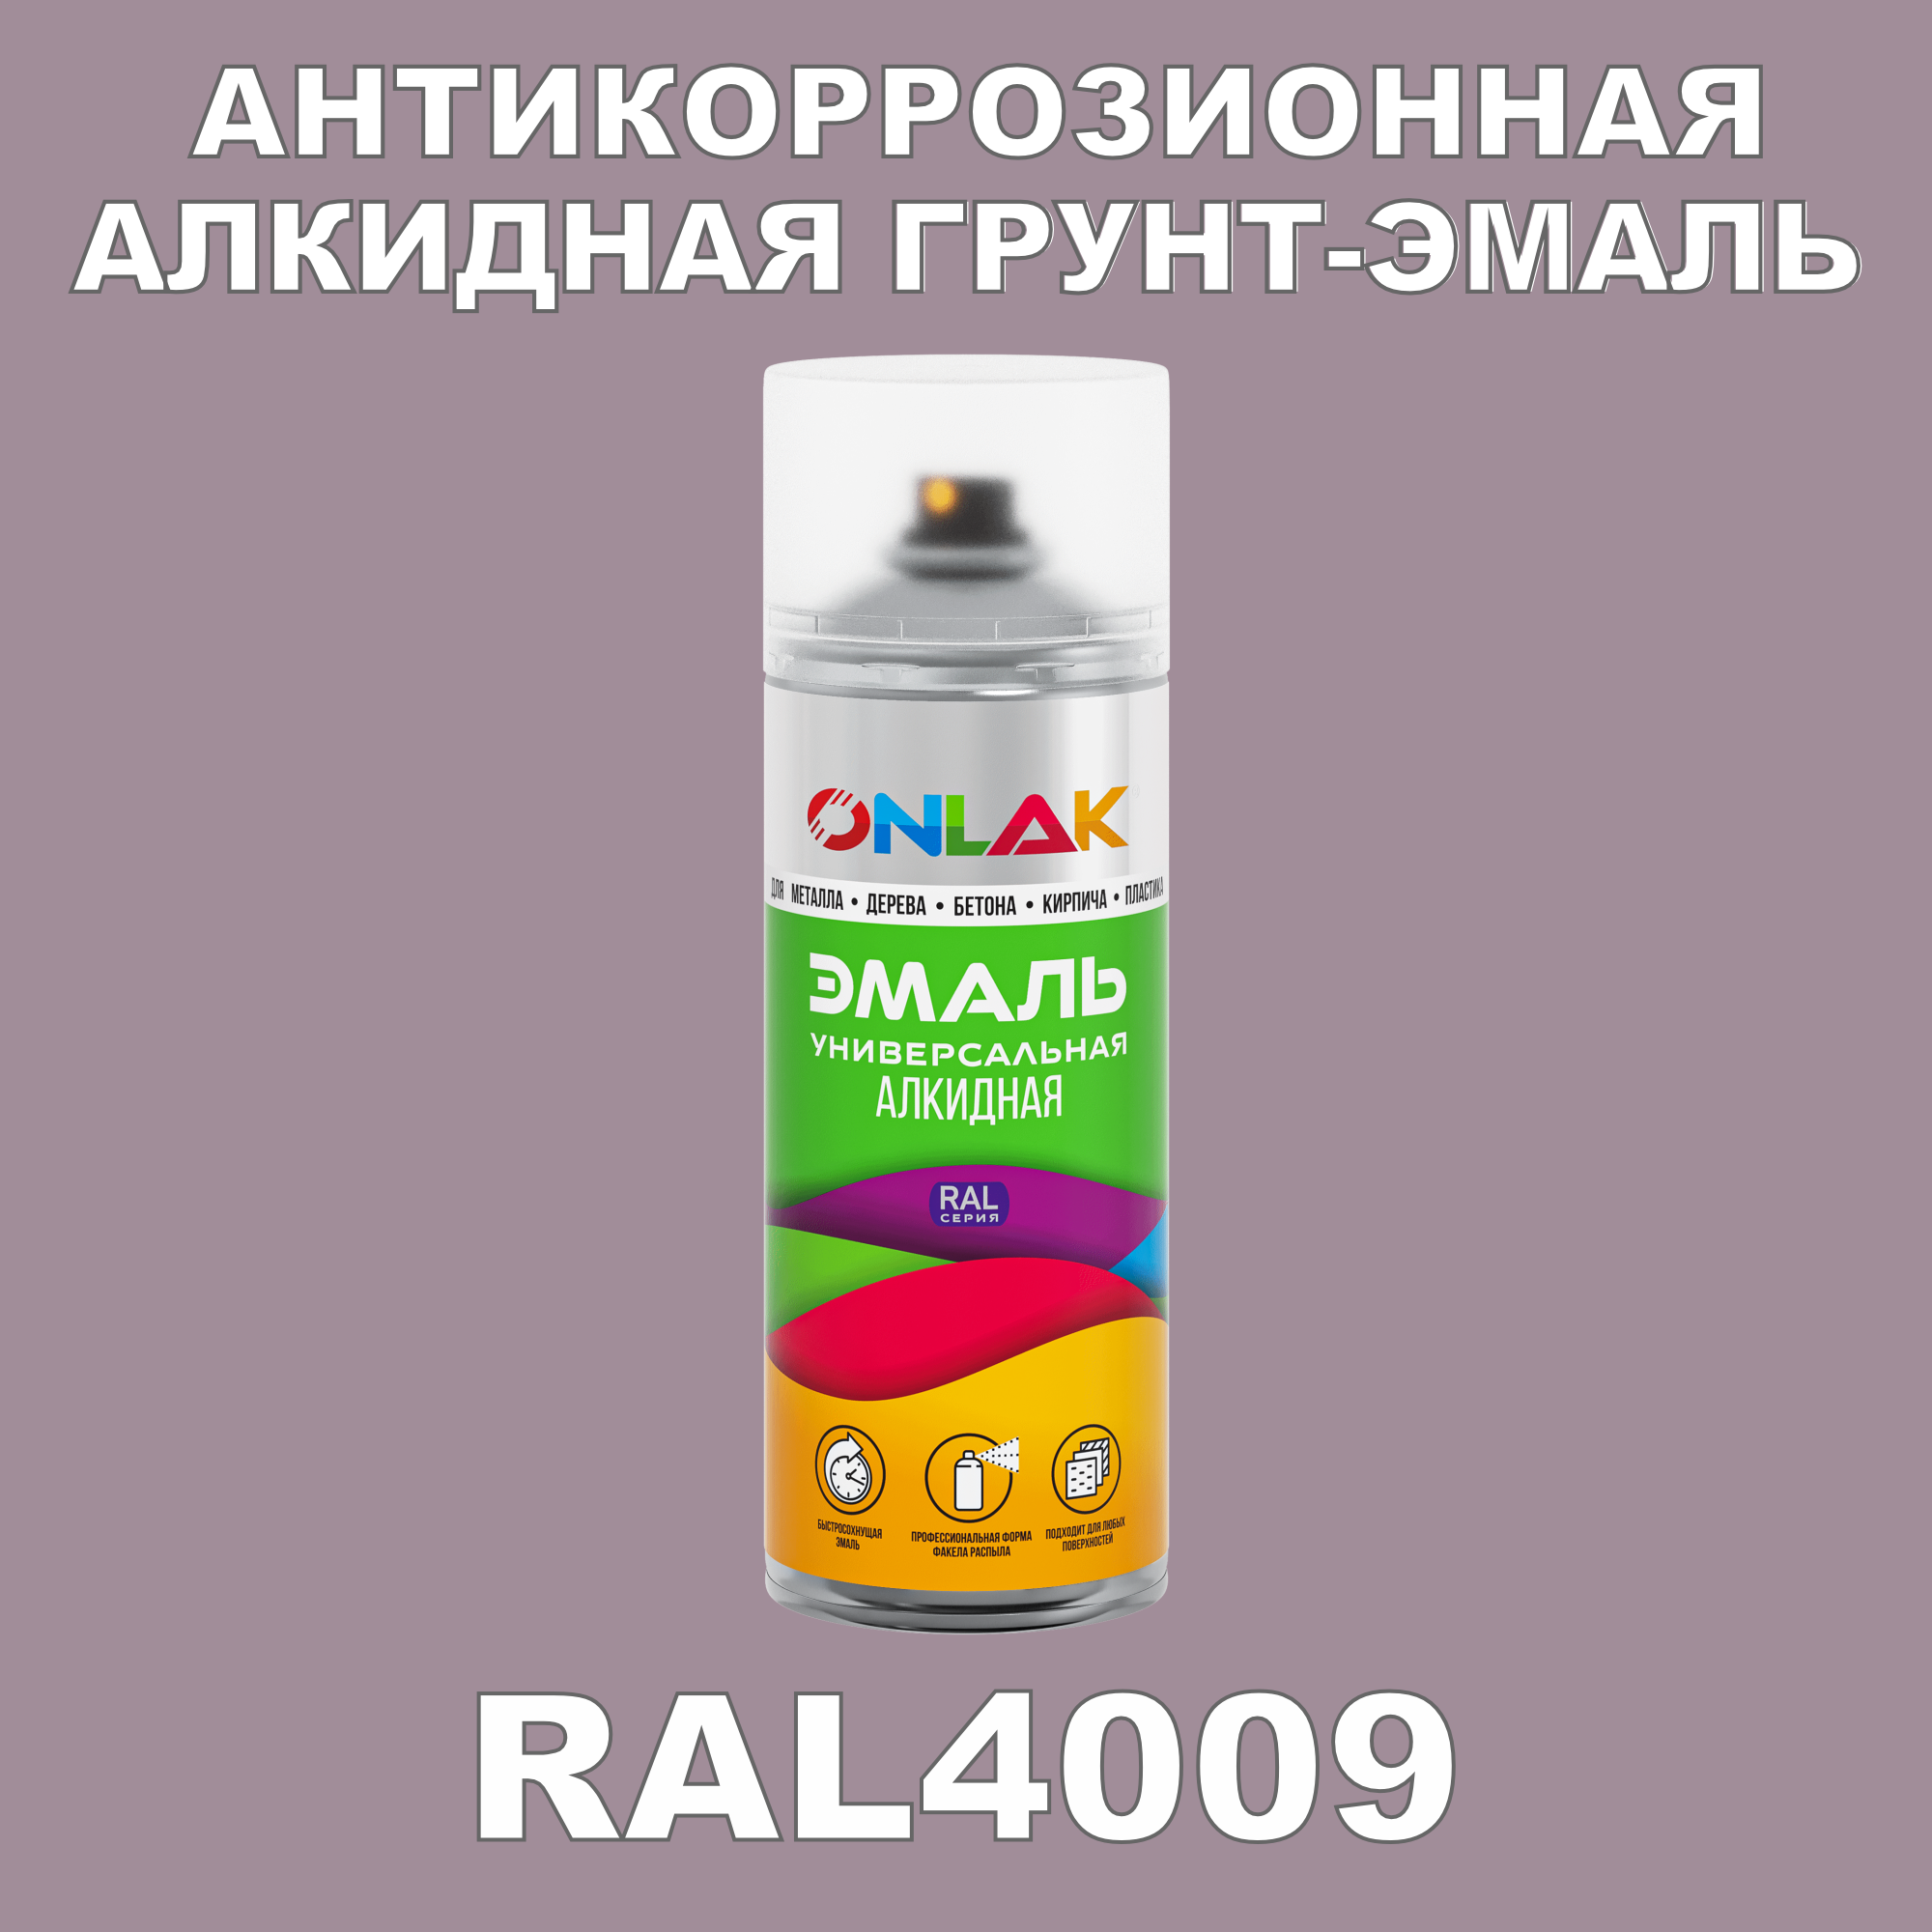 Антикоррозионная грунт-эмаль ONLAK RAL 4009,фиолетовый,593 мл artuniq color violet ной грунт для аквариума фиолетовый 9 кг